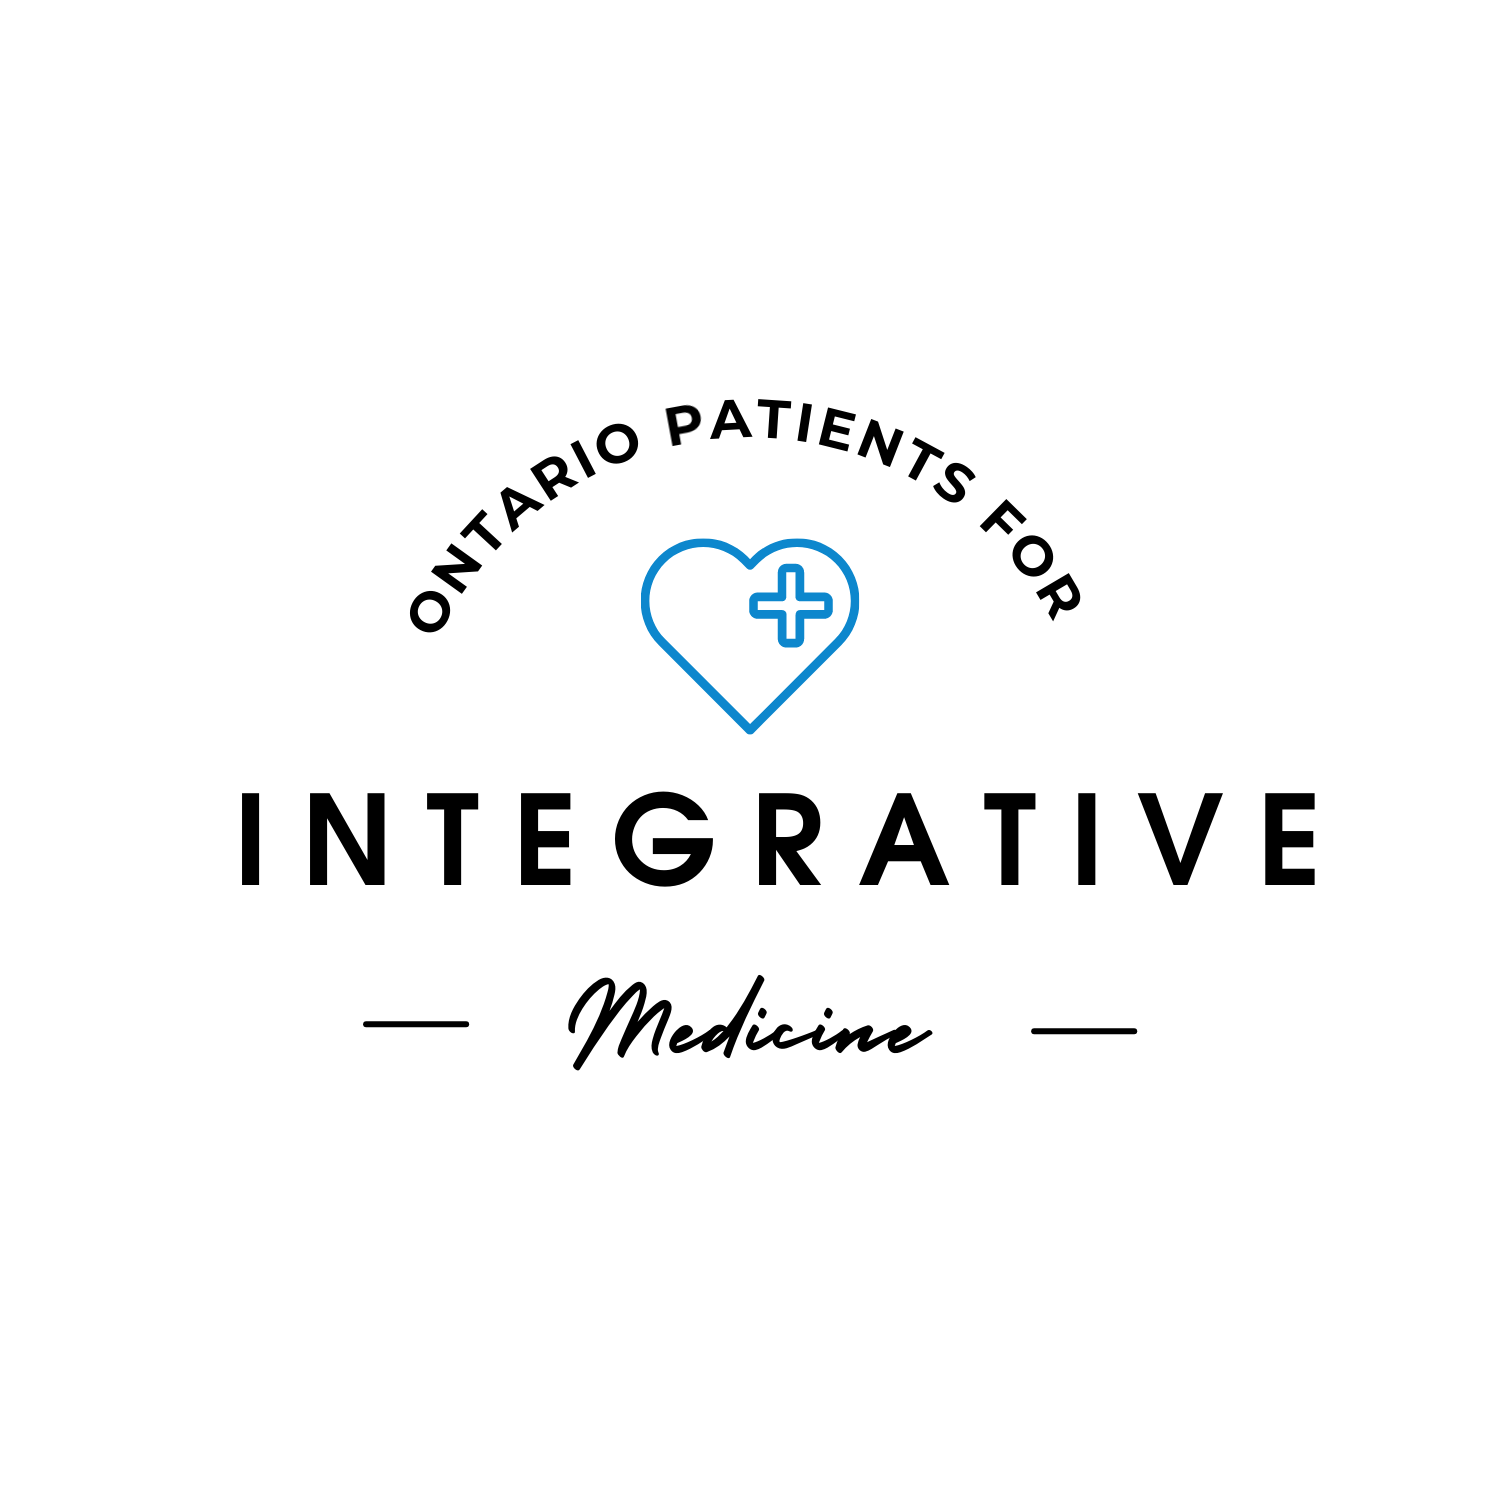 Ontario Patients for Integrative Medicine